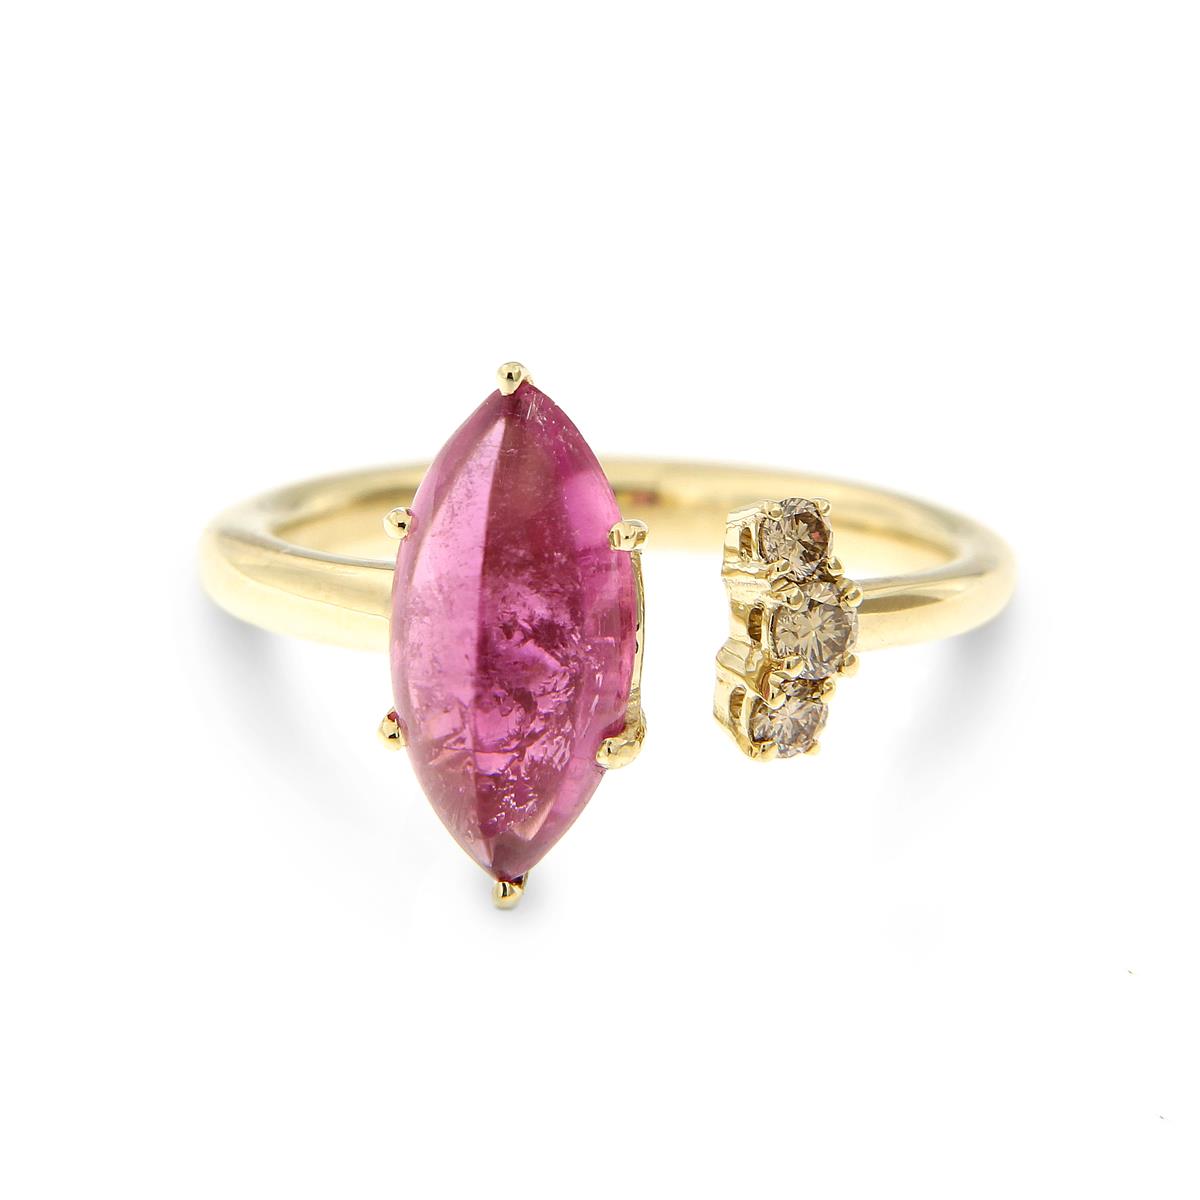 Katie g. Jewellery - Colour Burst Ring - Rosa Turmalin mit braunen Brillanten und 14kt. Champagnergold Ringschiene